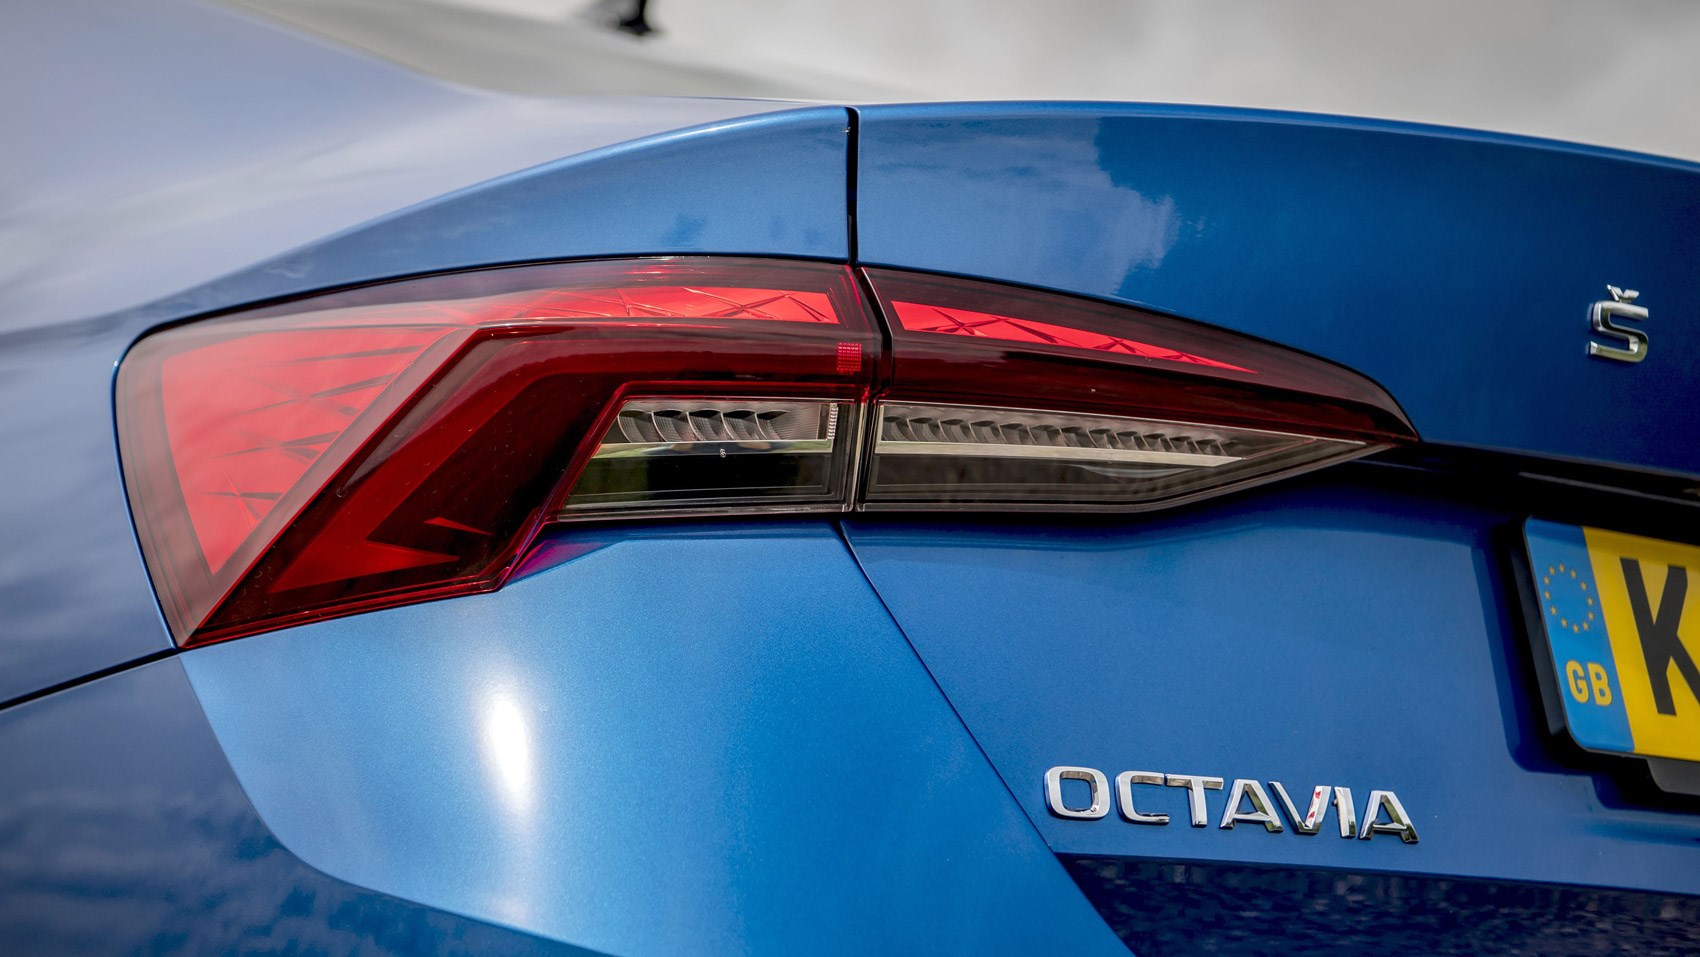 Octavia rear light